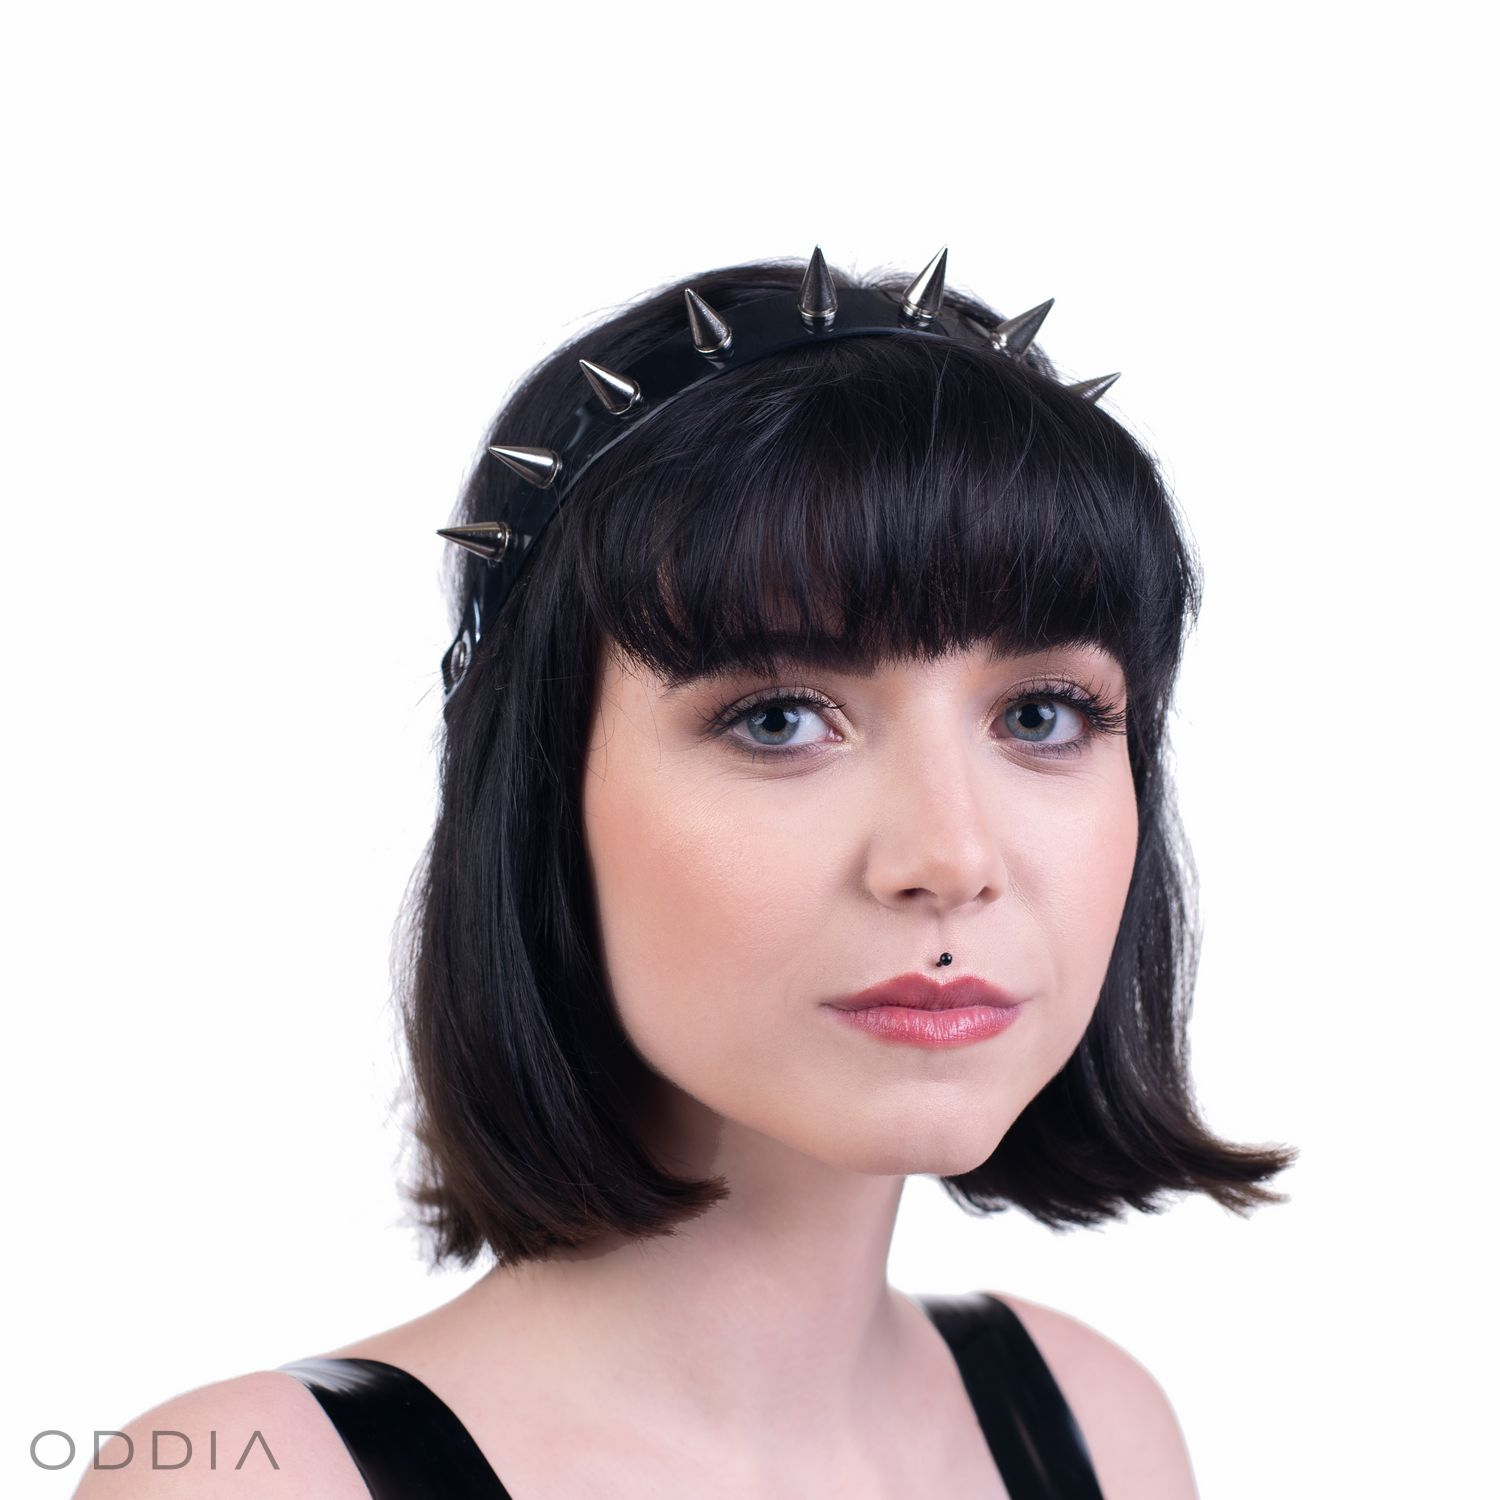 https://weareoddia.com/743-large_default/headband-spikesbury.jpg